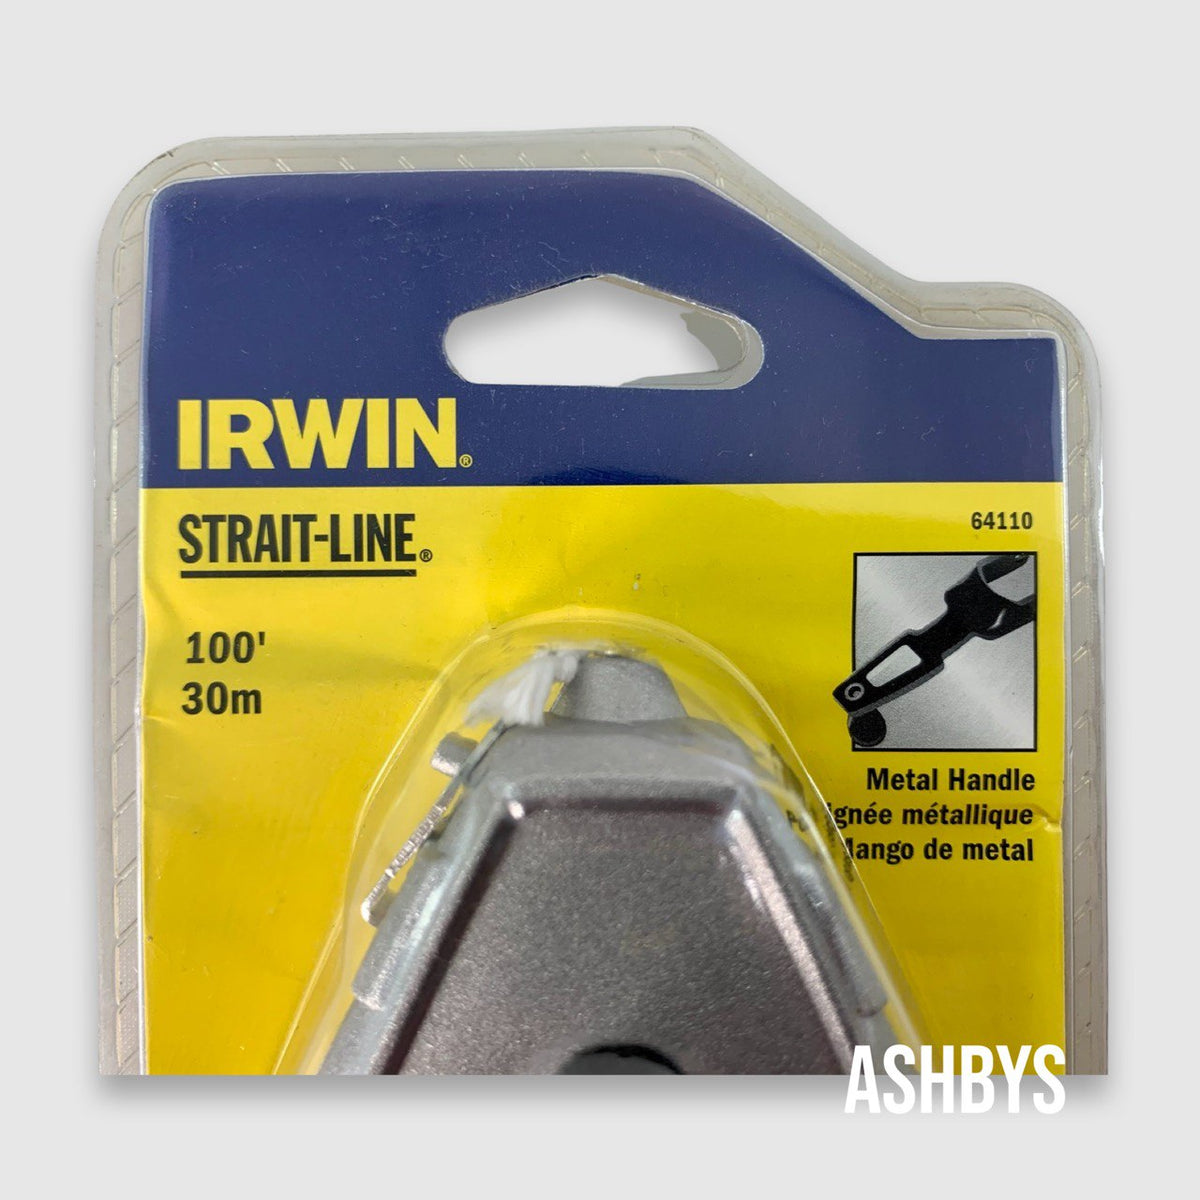 Irwin Strait-Line 100' / 30m Chalk Reel 64110 (NEW UNUSED OLD STOCK)